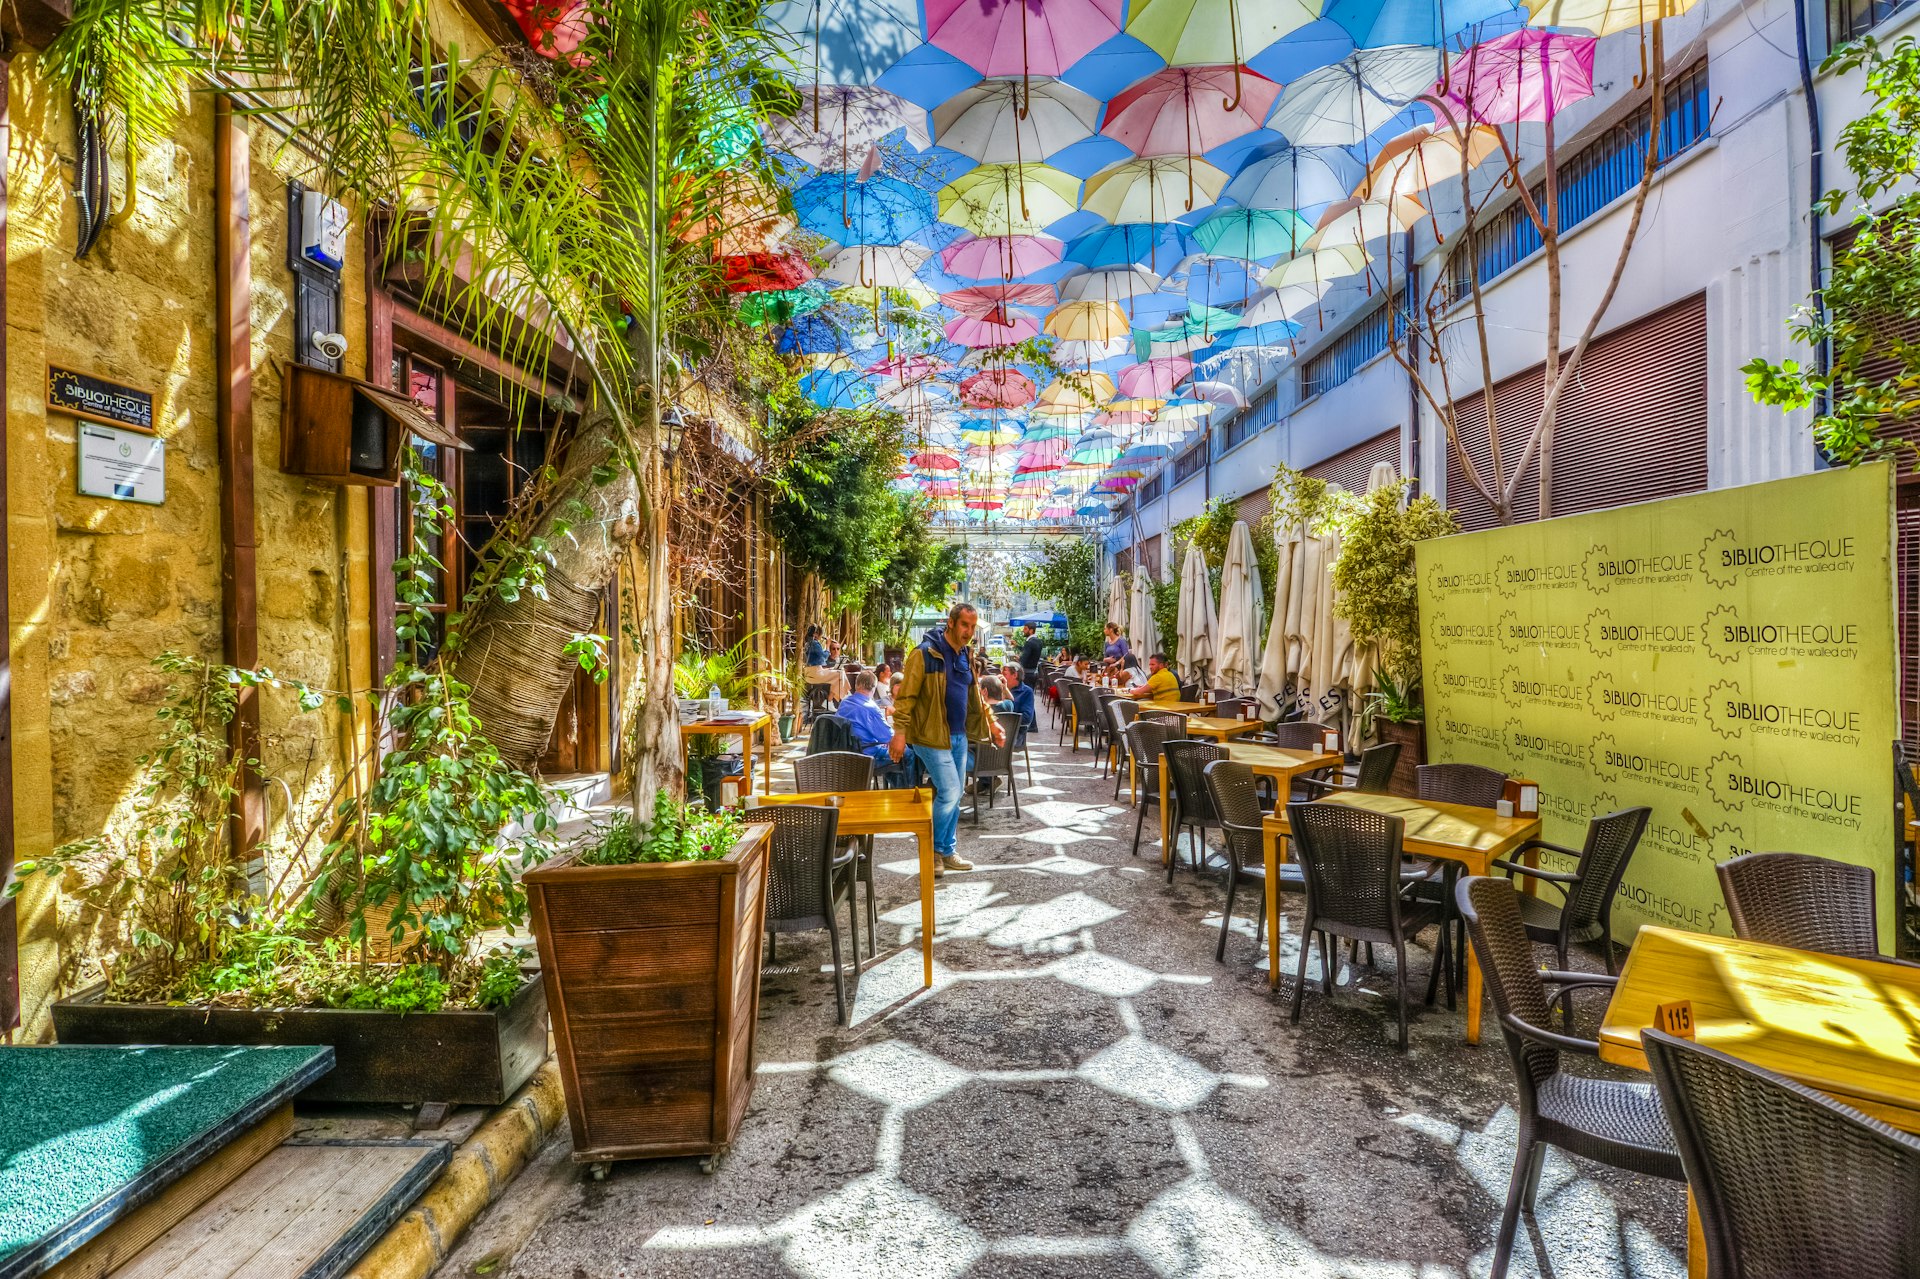 An umbrella-lined street in Nicosia. 